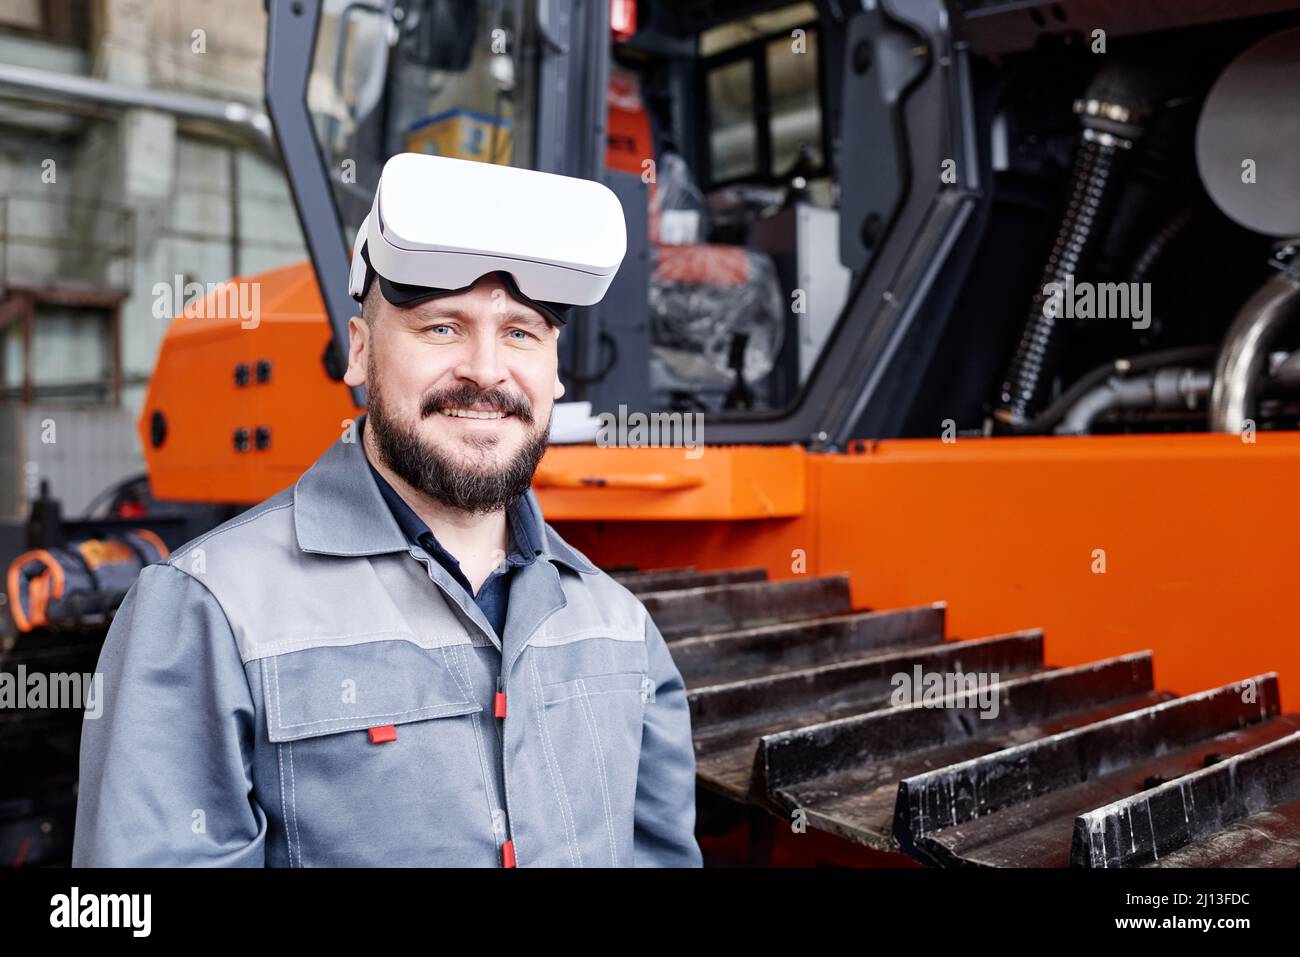 Un travailleur d'usine satisfait et mature portant un casque vr et des vêtements de travail regardant les caméras lorsqu'il se trouve à côté d'une machine industrielle Banque D'Images